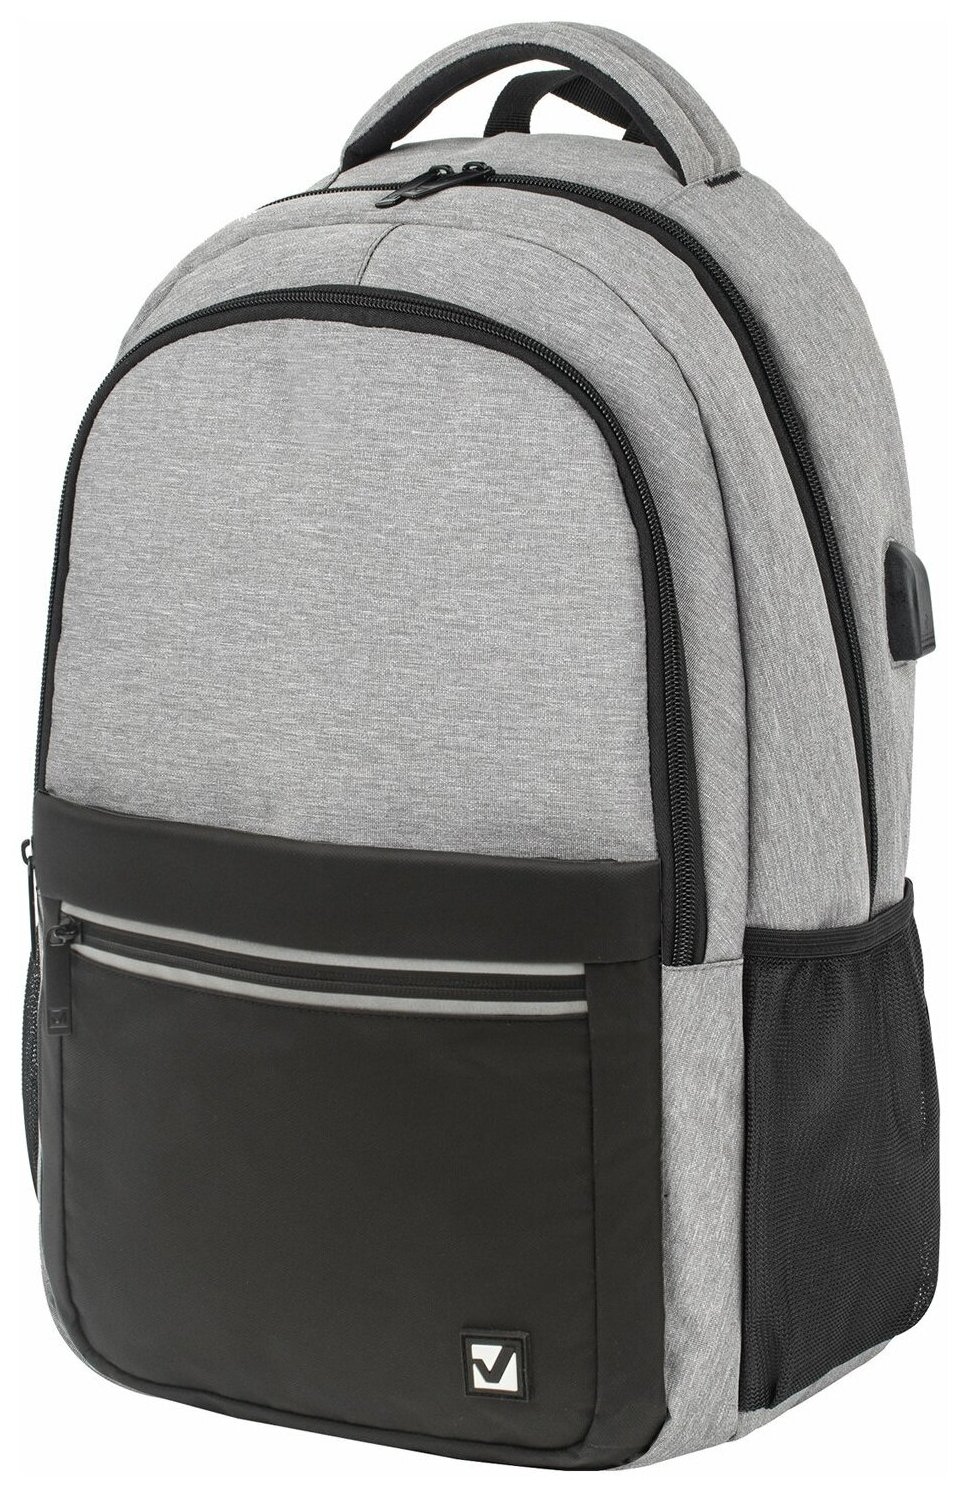 Рюкзак BRAUBERG URBAN универсальный, с отделением для ноутбука, USB-порт, Detroit, серый, 46х30х16 см